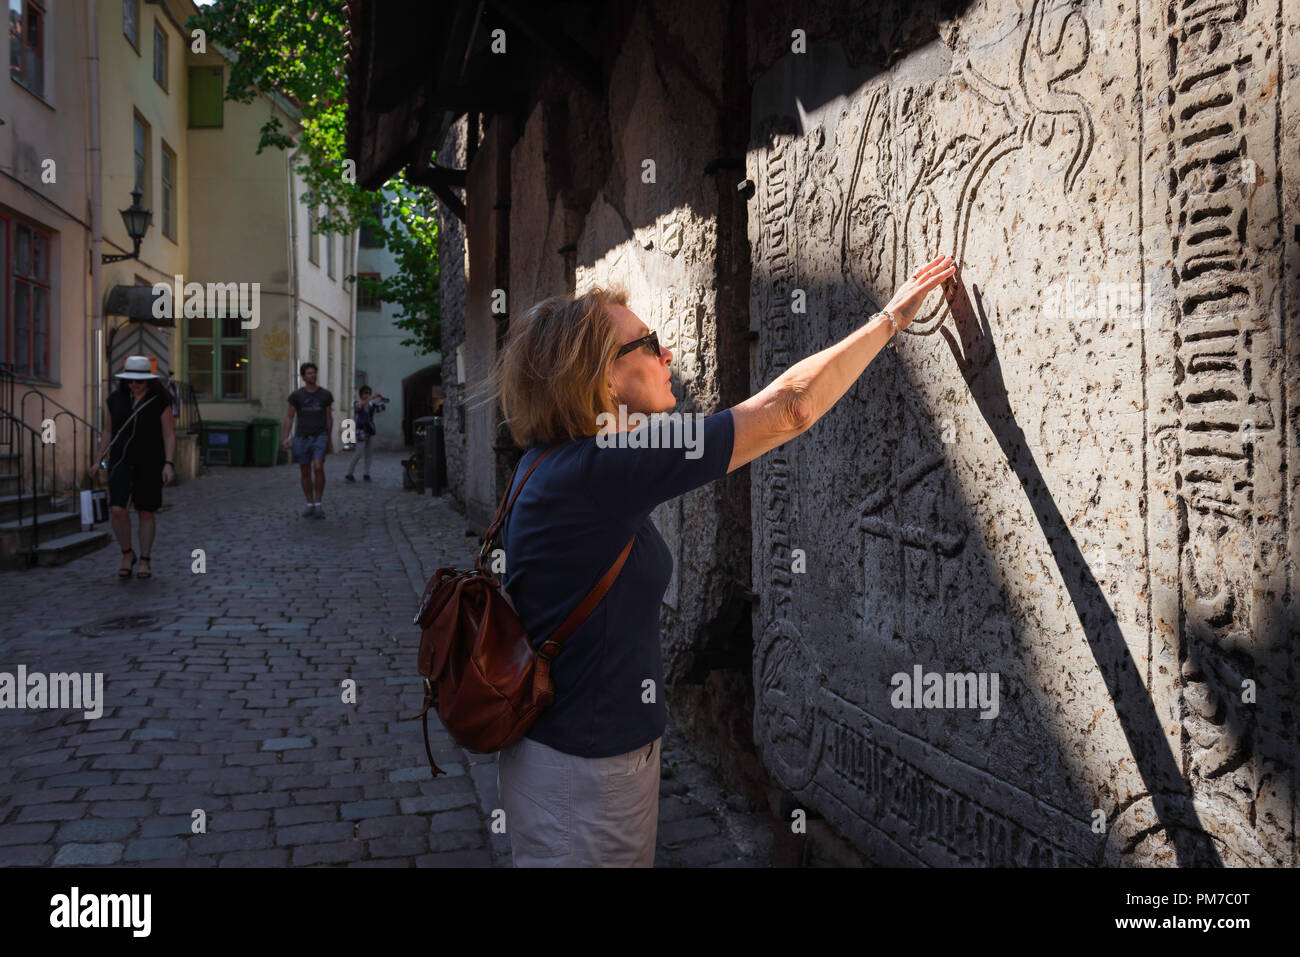 Frau reisen erkunden, Blick auf eine reife weibliche Reisende berühren einen mittelalterlichen Grabstein in der historischen Altstadt (Vanalinn) Bereich von Tallinn, Estland. Stockfoto